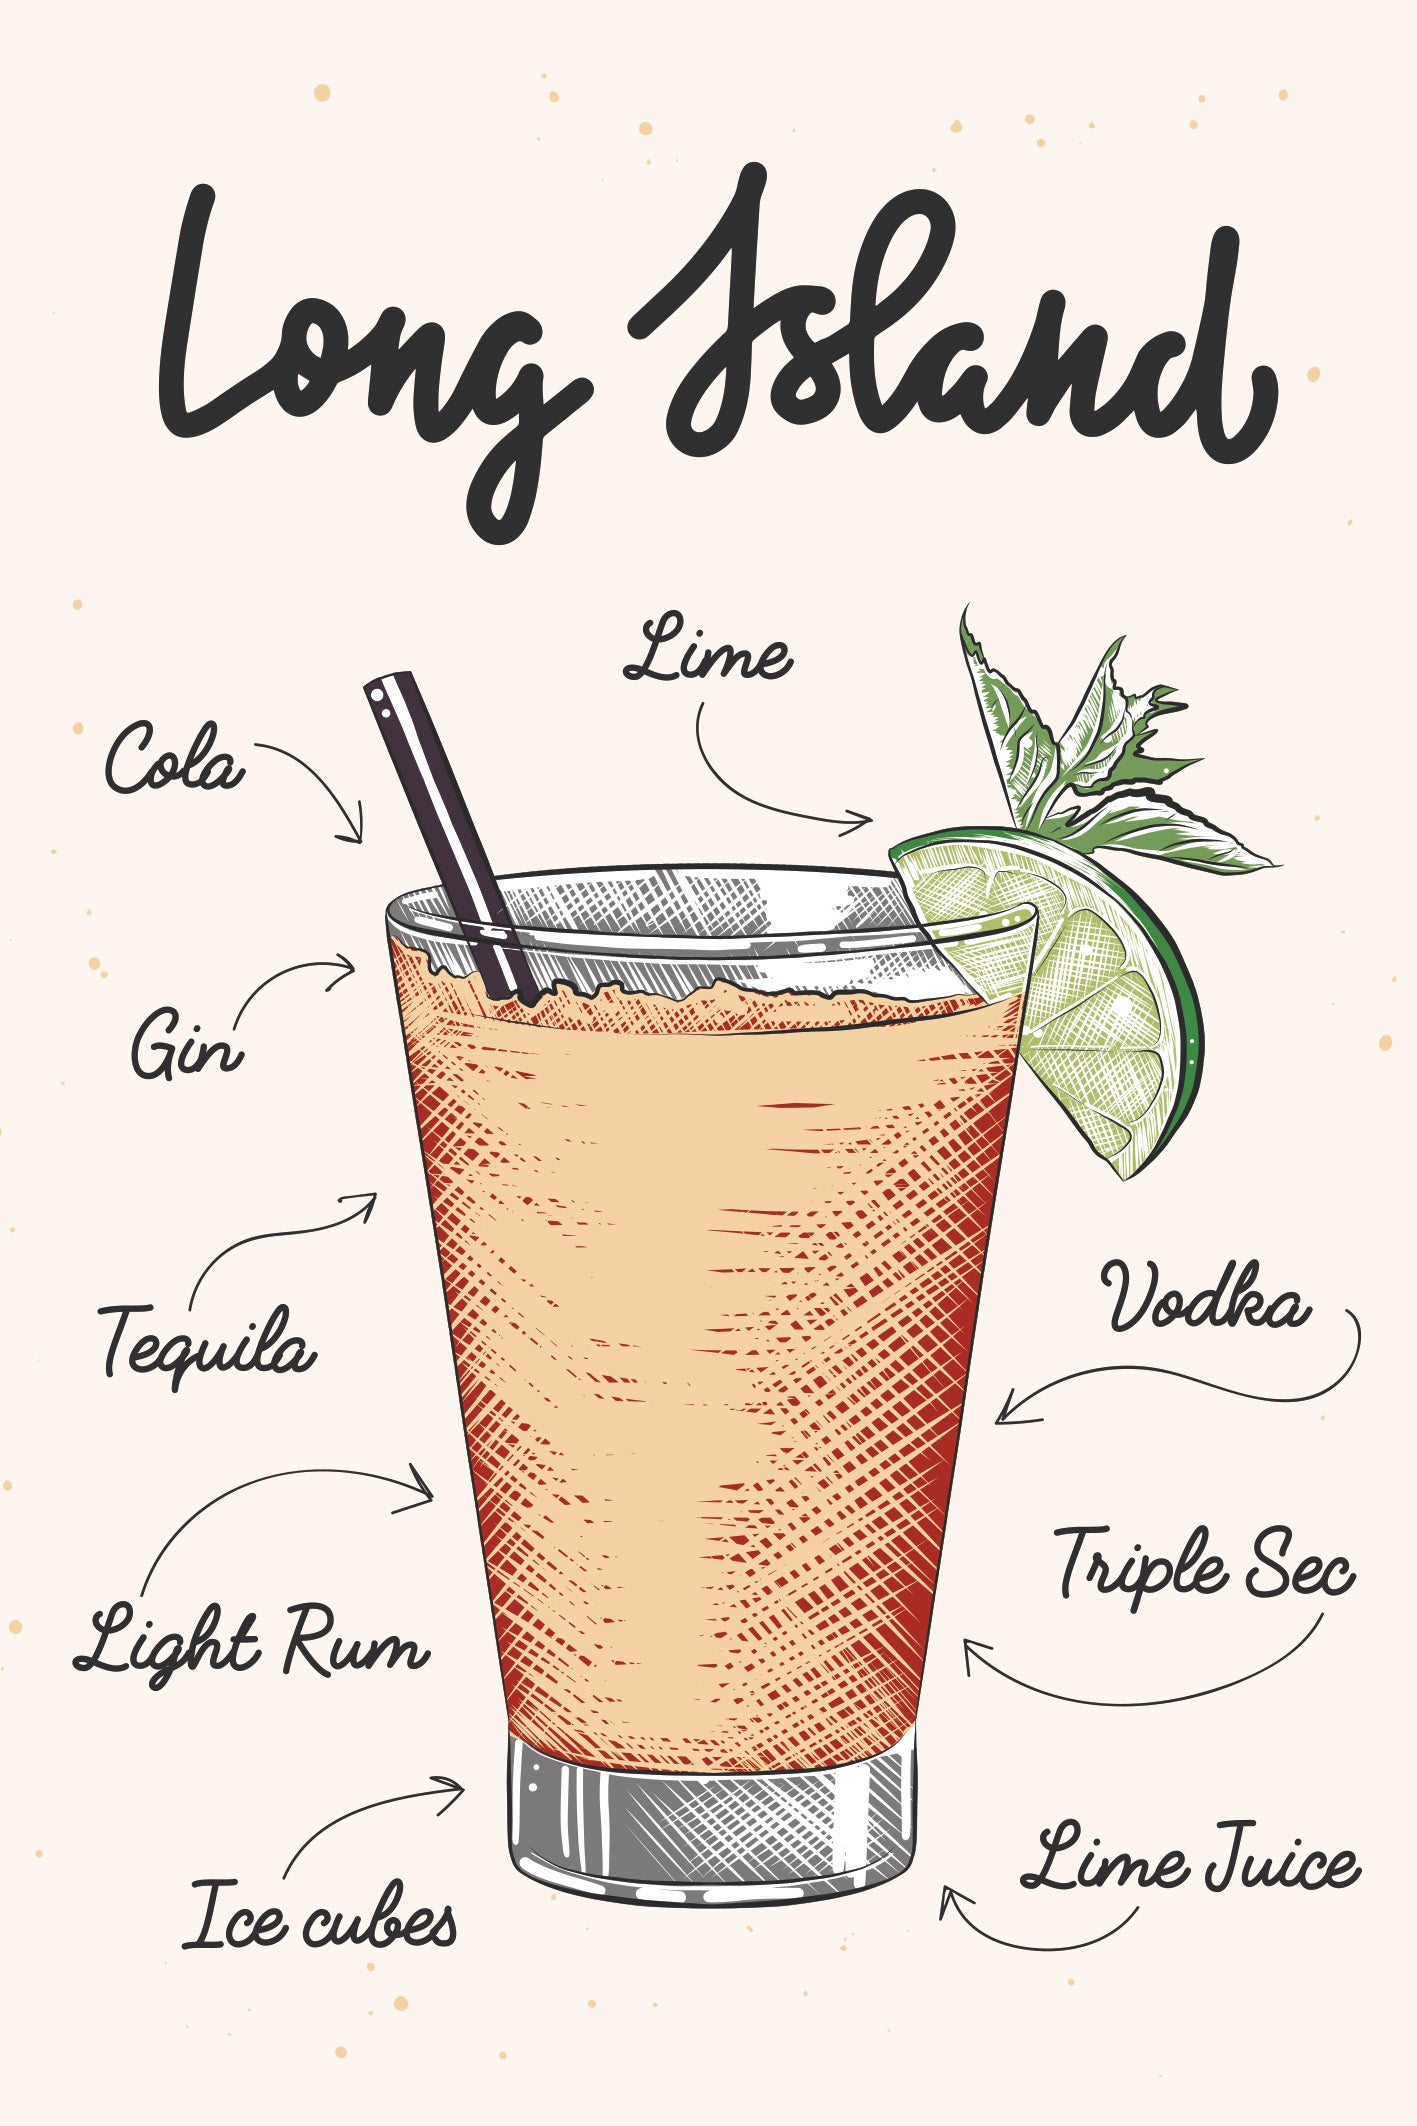 Une illustration coloré d’un verre de cocktail Long island avec la liste des ingrédients nécessaires à sa réalisation écrit en police d'écriture manuscrite sur un fond corail.